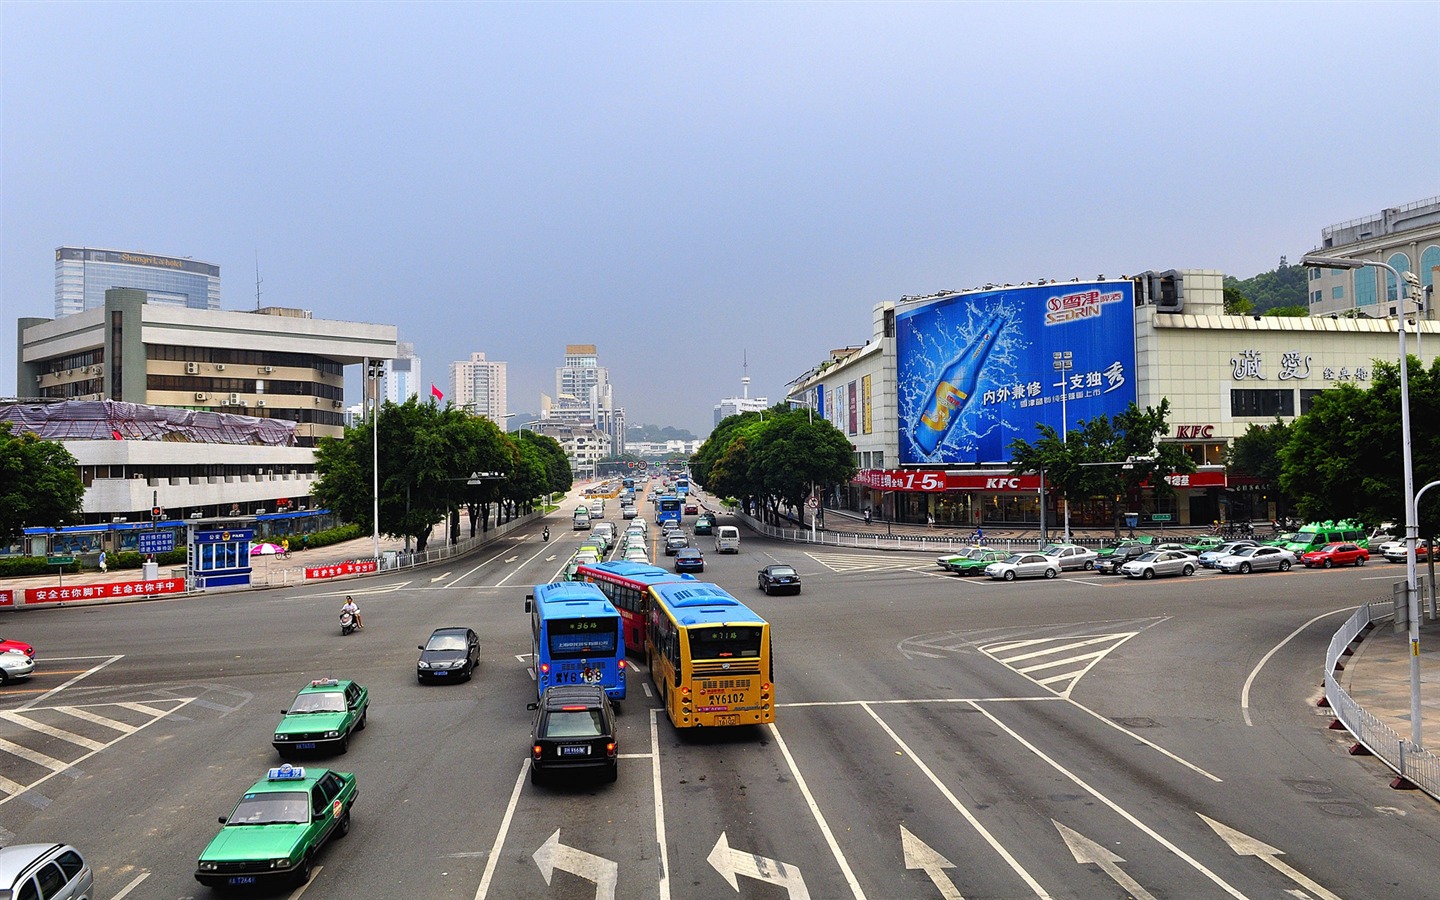 rue Fuzhou avec la prise de vue (photo Travaux de changement) #3 - 1440x900